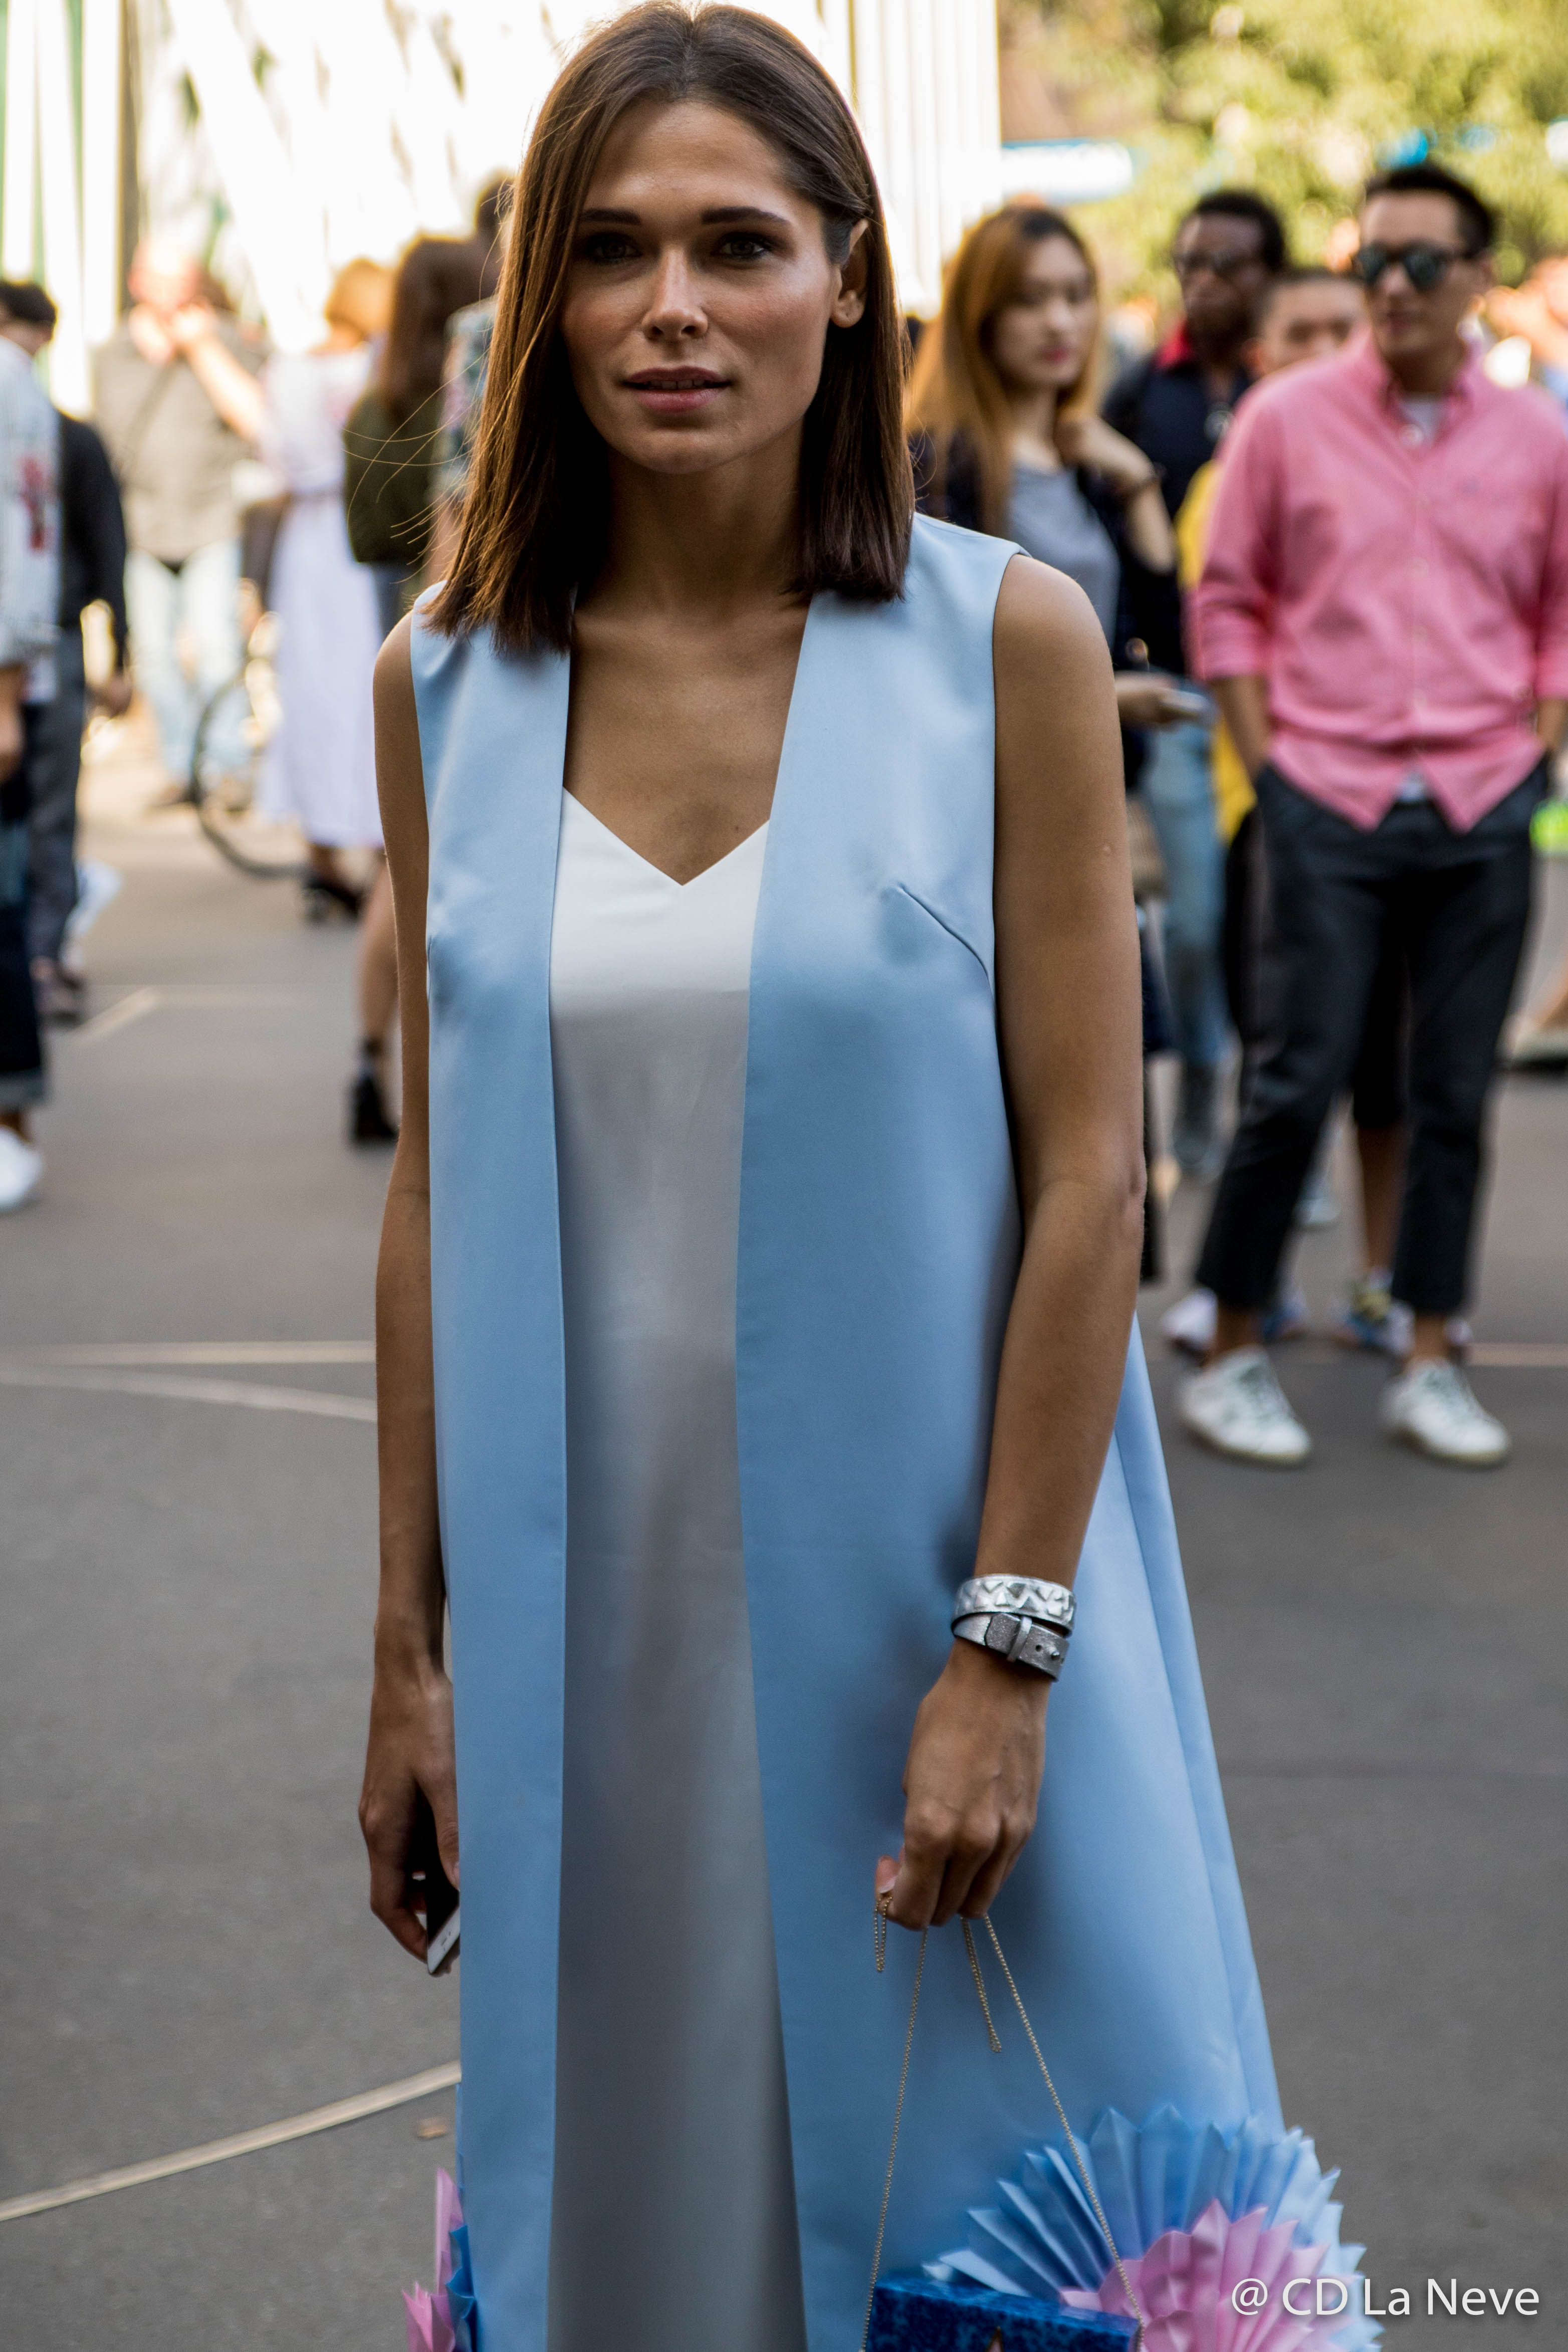 Jil Sander Show at Milan Fashion Week